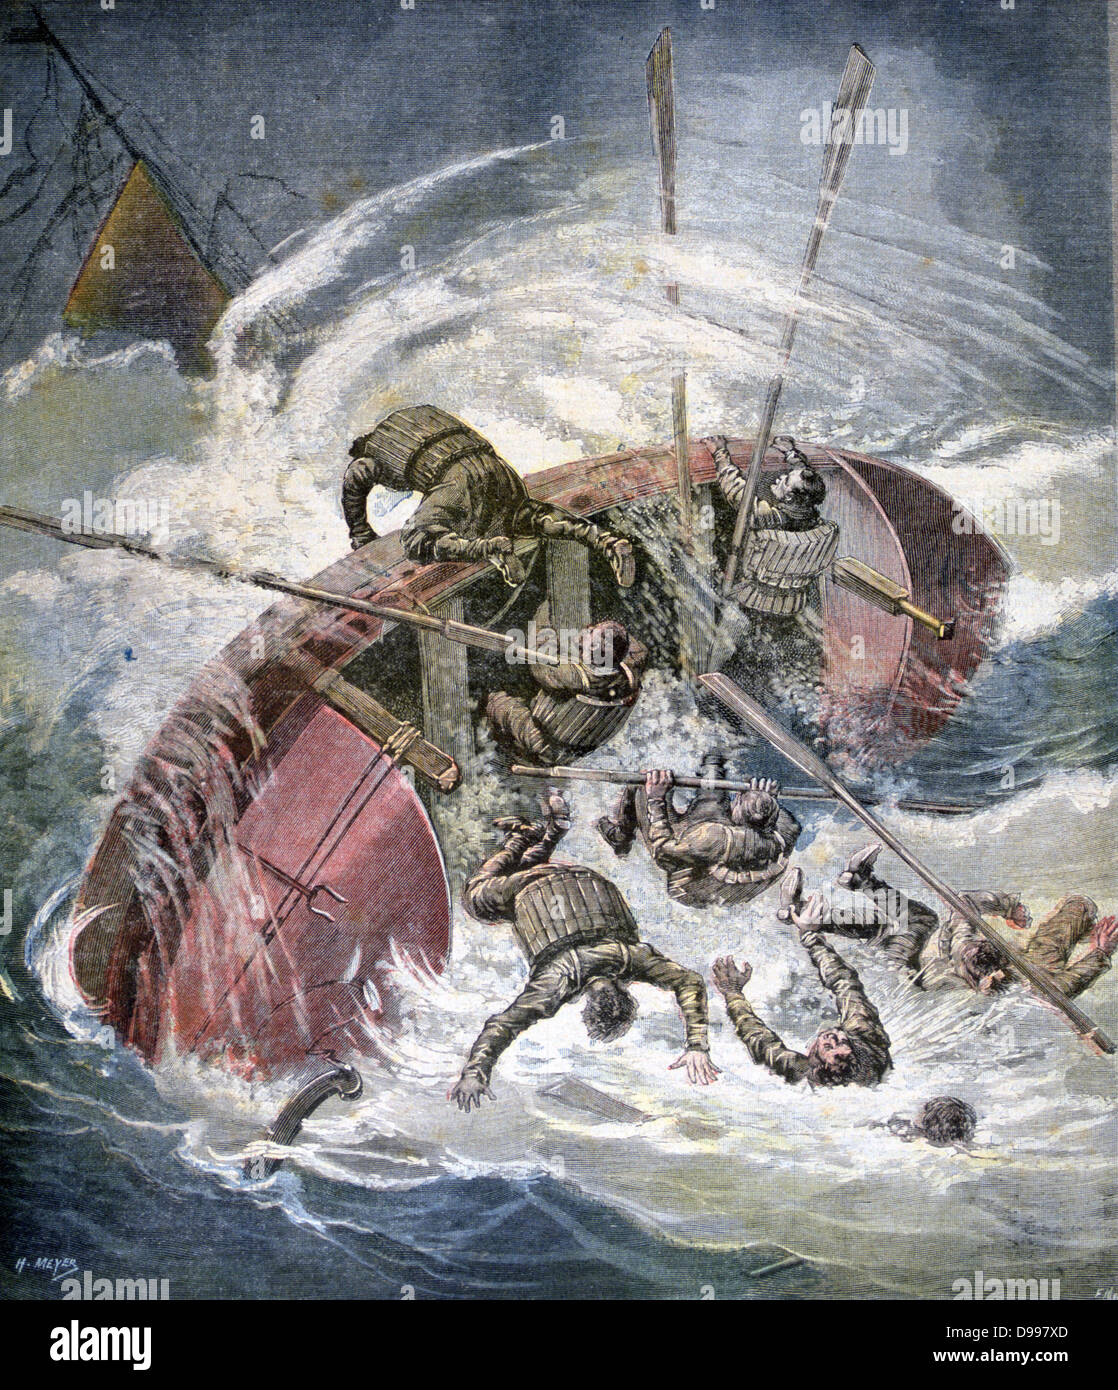 Stürme im Herbst: Rettungsboot kenterte in einem schweren Meer. Männer tragen Cork rettungsgürtel. Von "Le Petit Journal", Paris, 28. November 1891. Wetter, Wind, Wellen Stockfoto